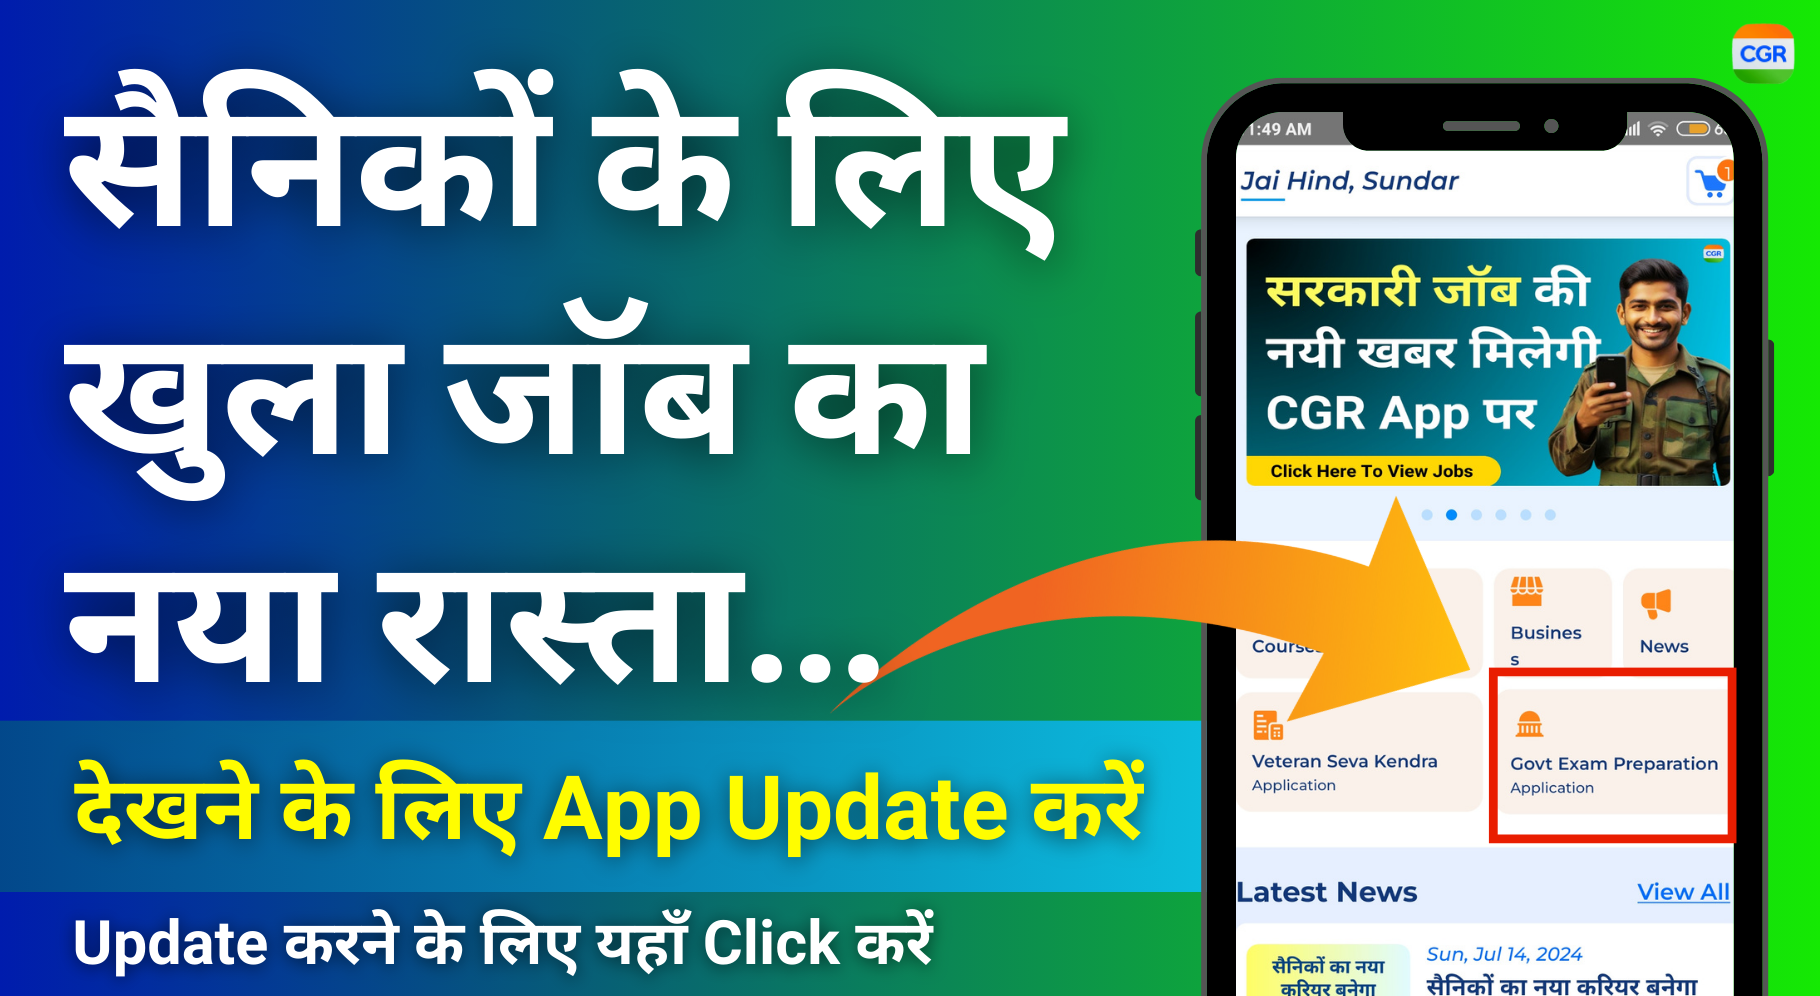 Update App For Govt Job Prep